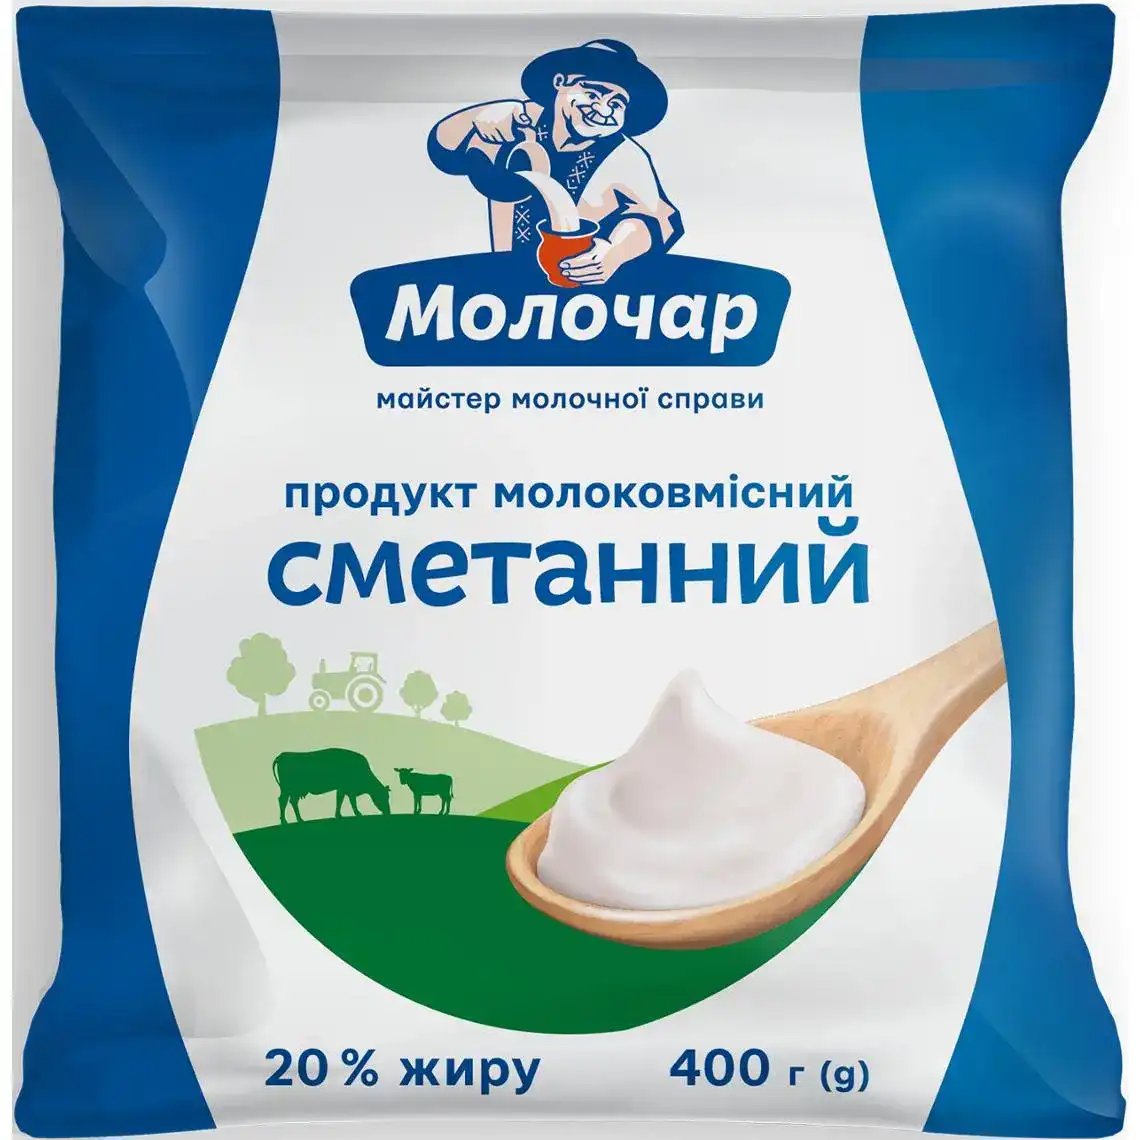 Продукт молоковмісний сметанний Молочар 20% 400 г